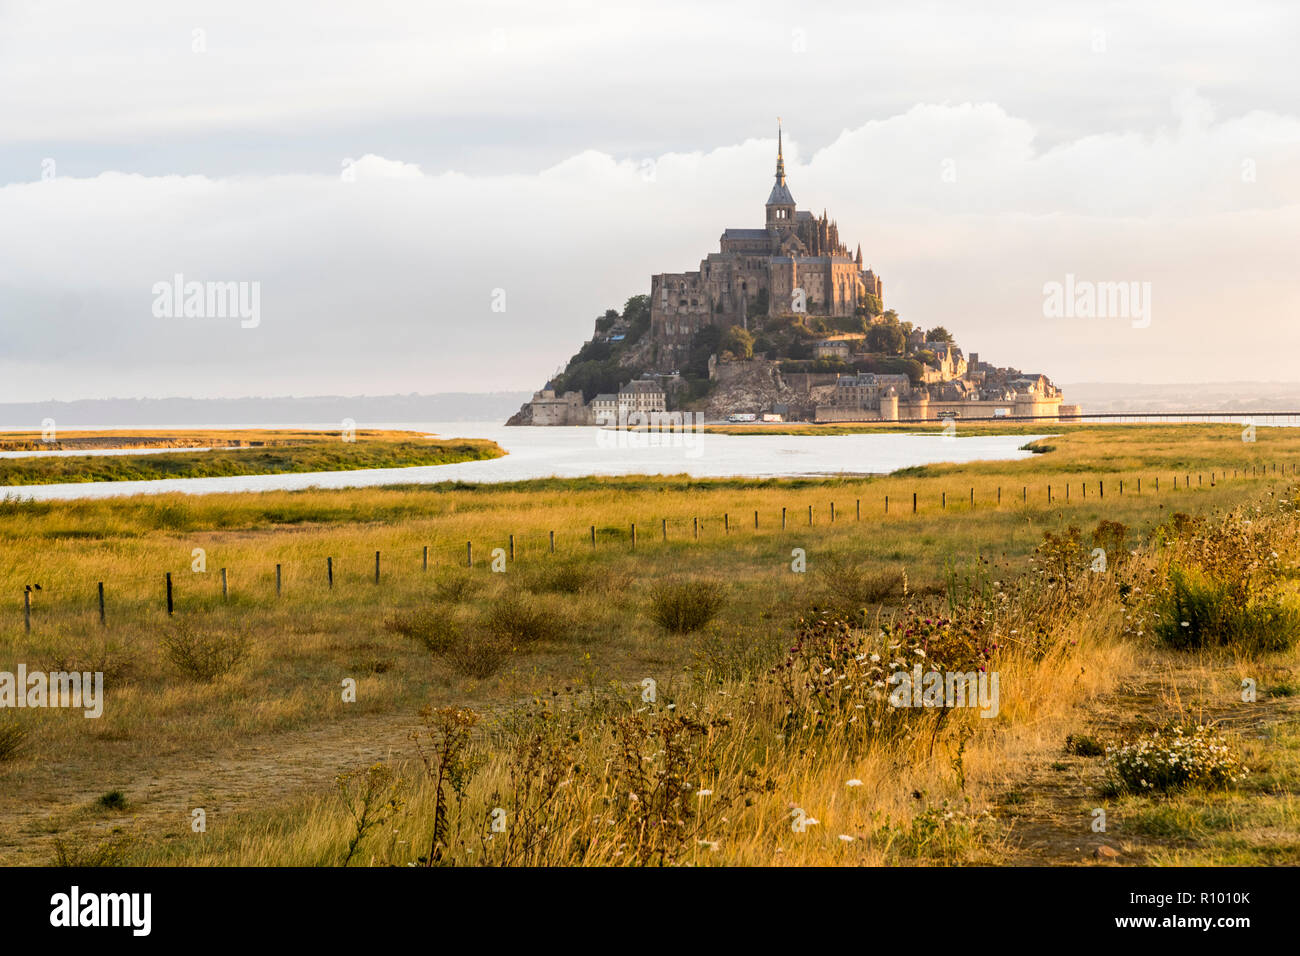 Le Mont-Saint-Michel, France, une île et un monastère en Normandie, Site du patrimoine mondial depuis 1979, par un chaud matin d'été Banque D'Images